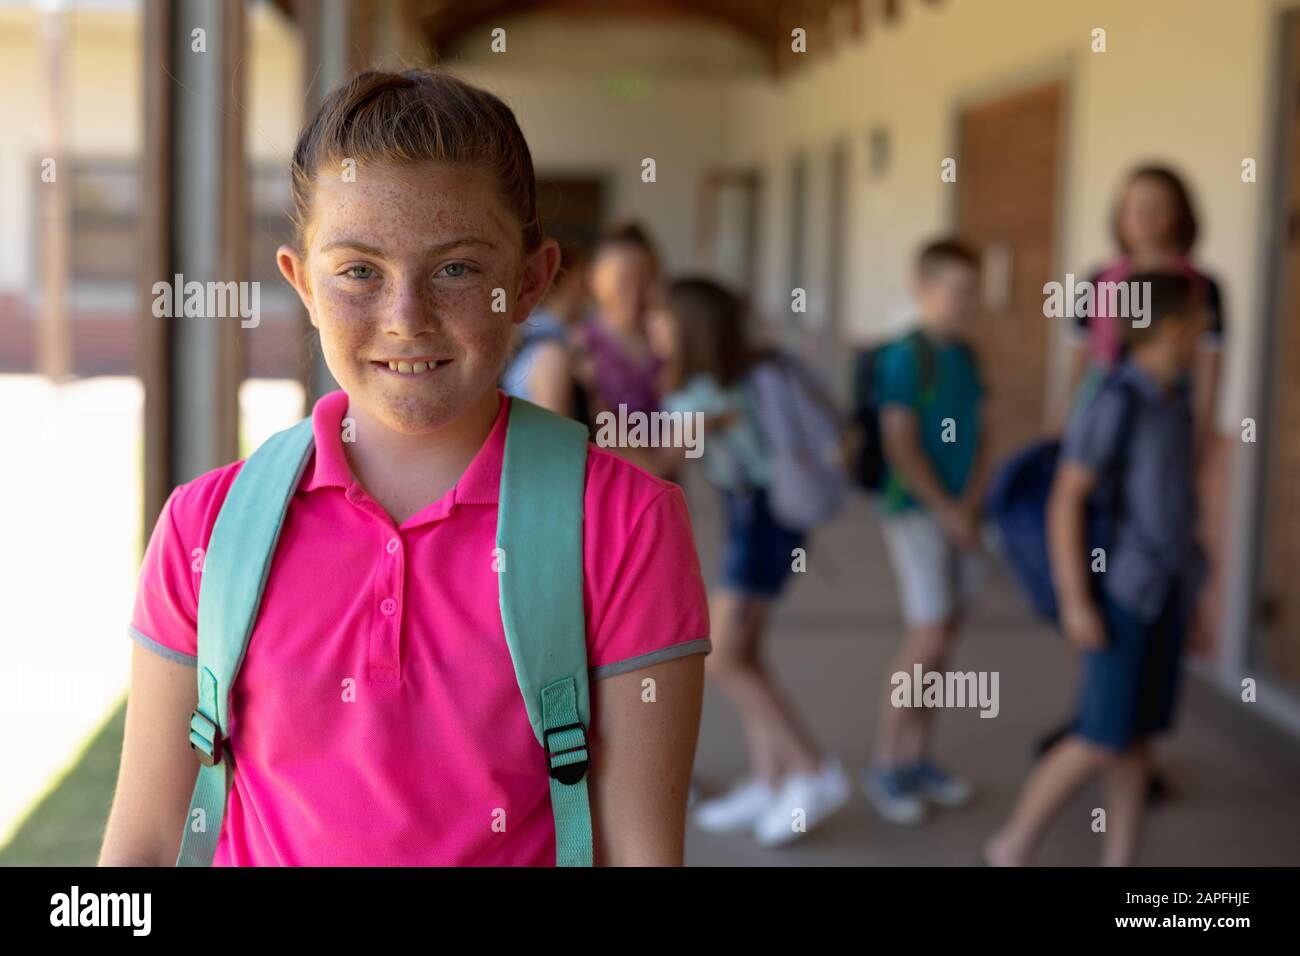 Schoolgirl standing in the schoolyard at elementary school Stock Photo